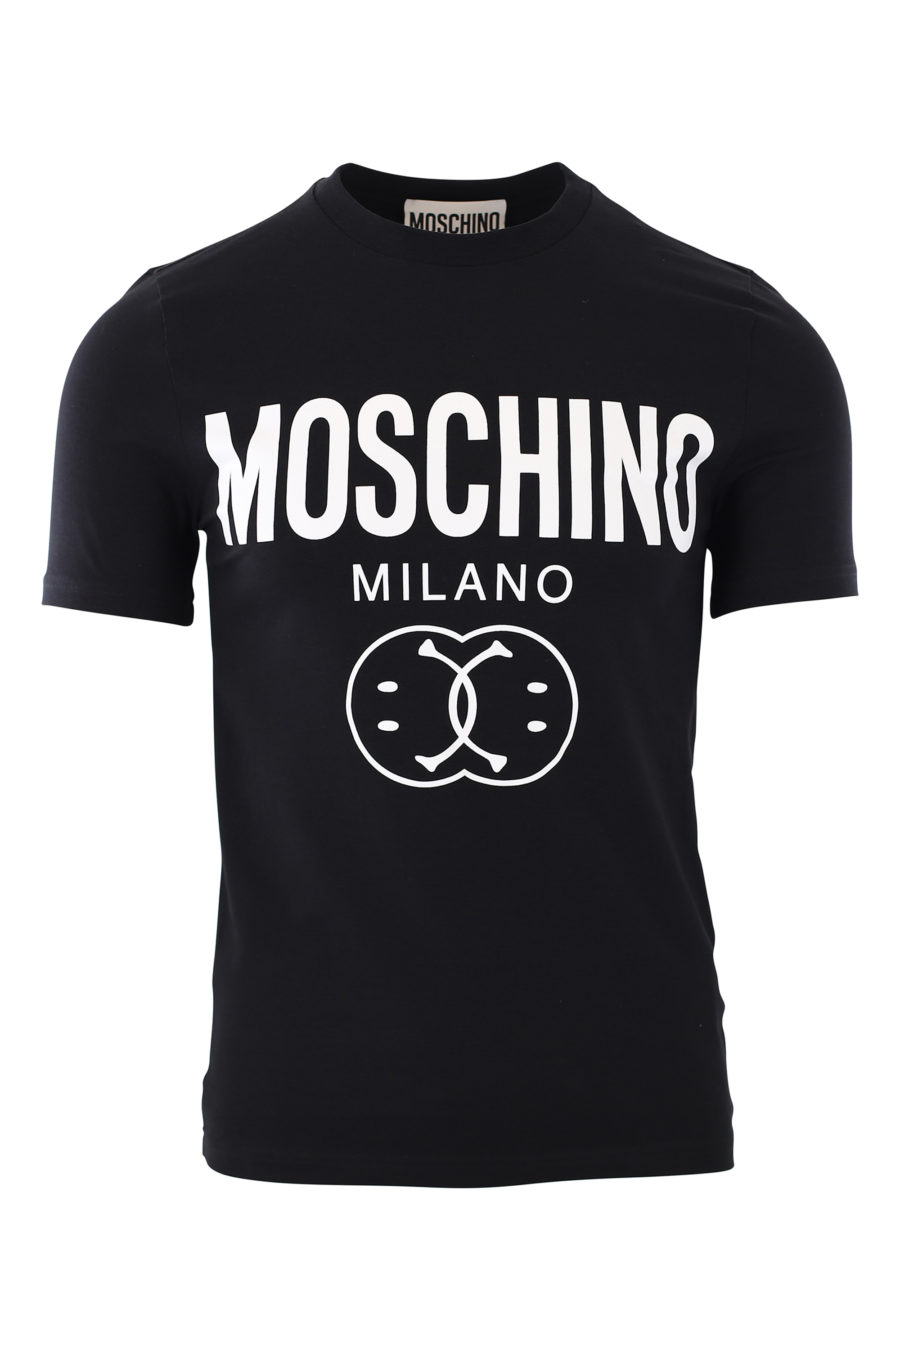 T-shirt preta com o logótipo "smiley" de Milão - IMG 2425